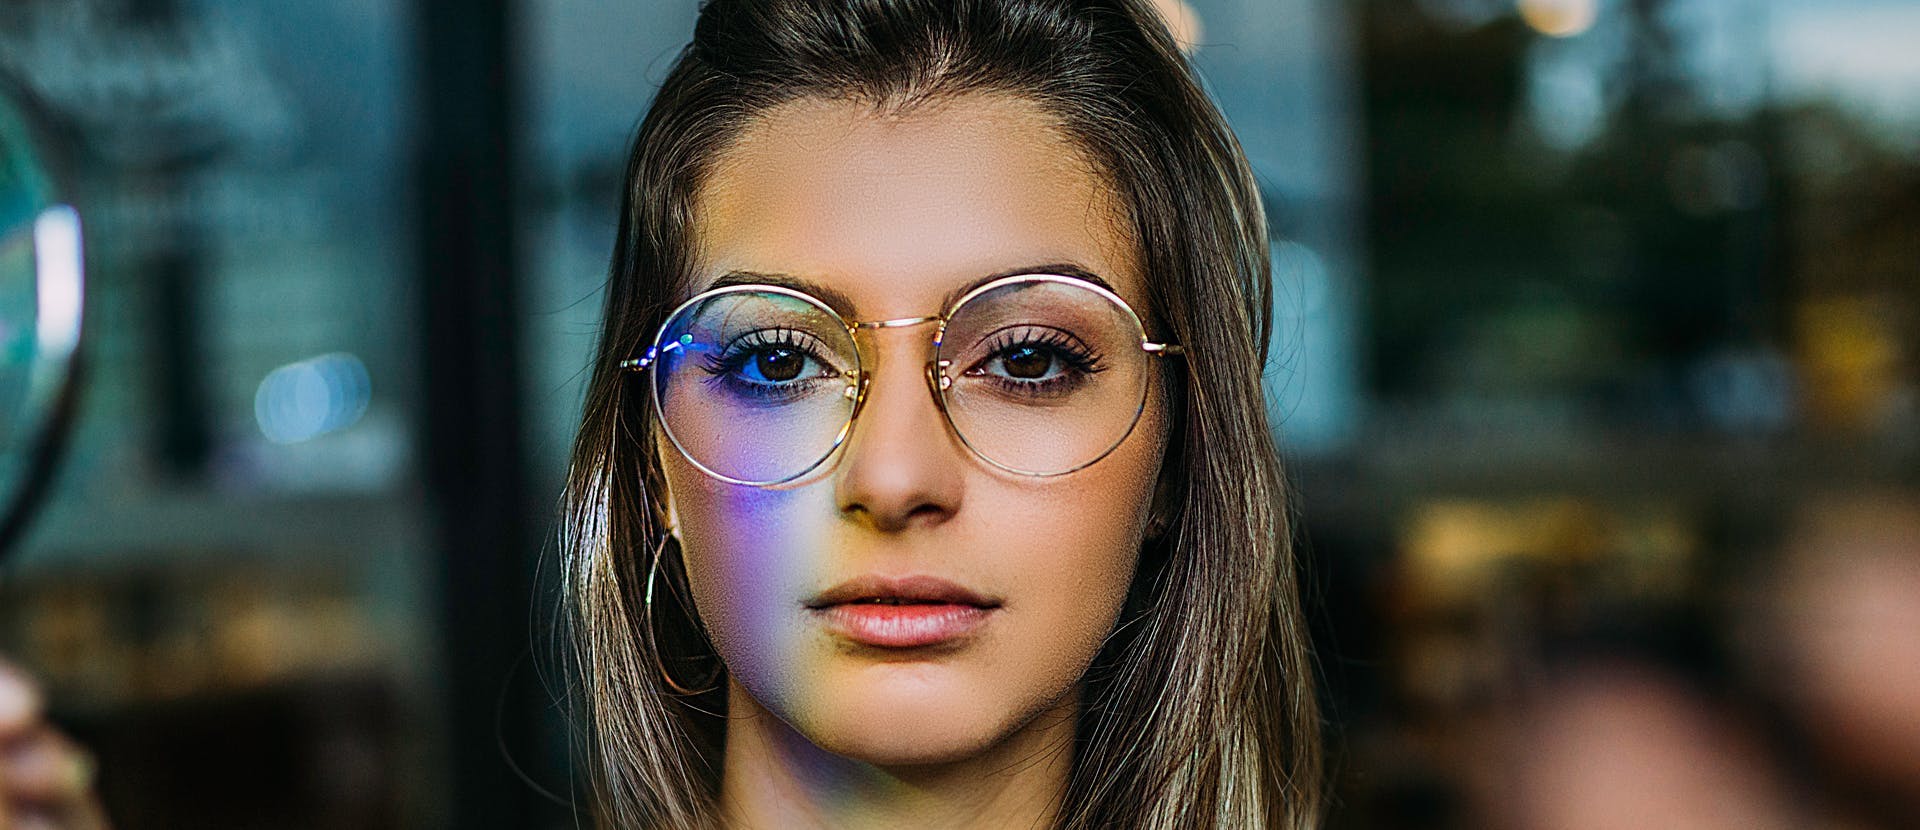 glasses accessory accessories face human person female